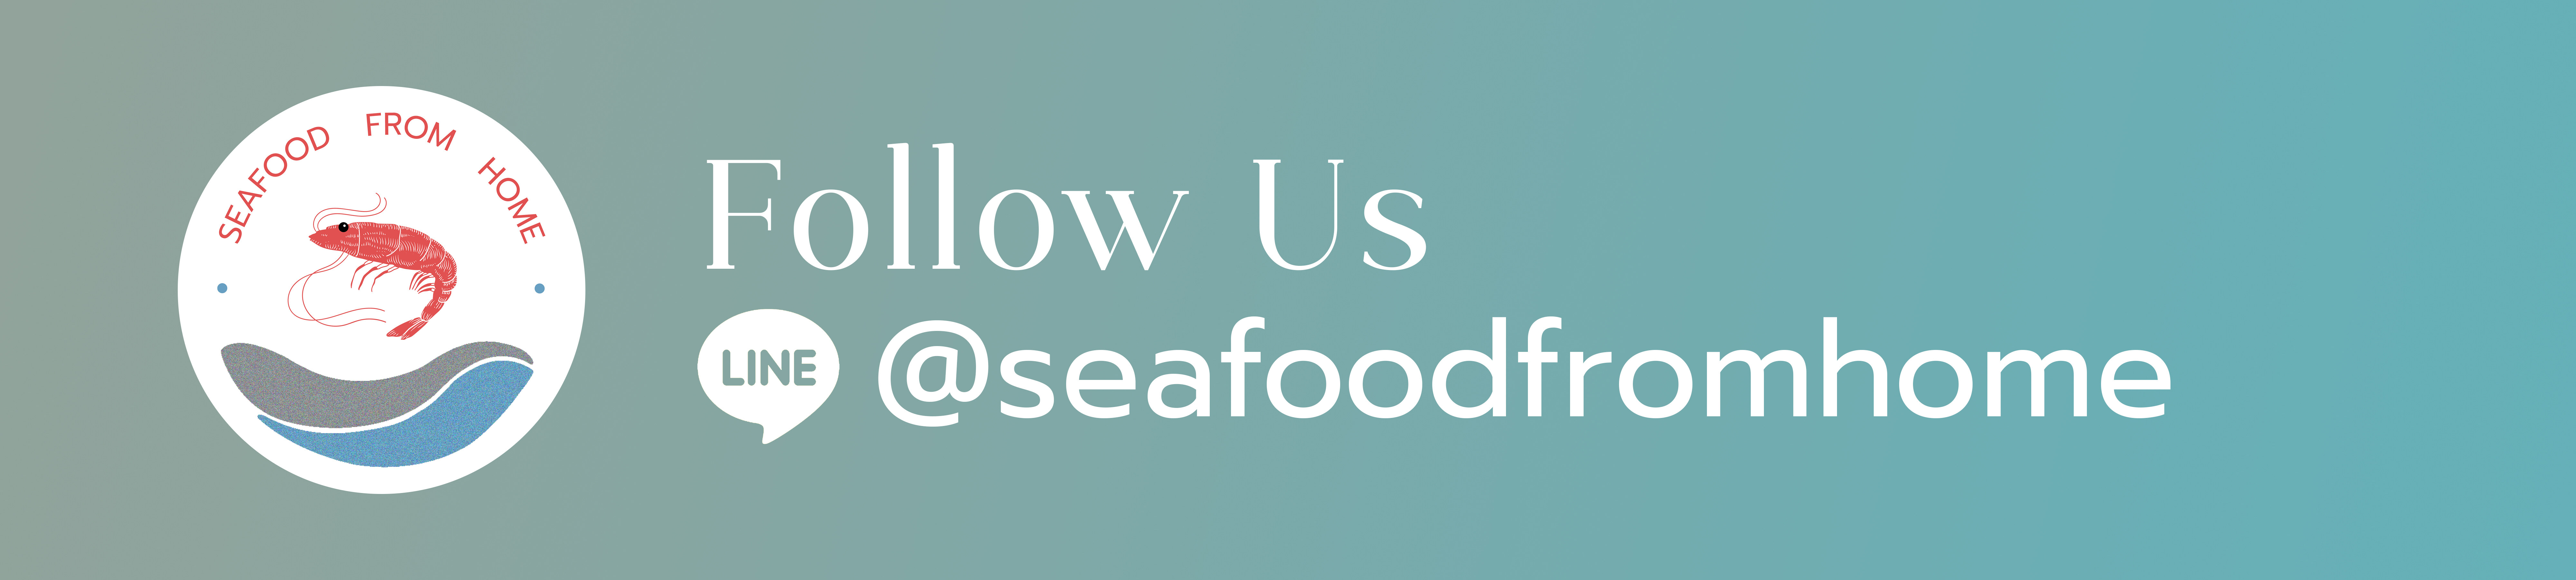 รายละเอียดเพิ่มเติมเกี่ยวกับ 《ส่งฟรี》กุ้งลายเสือ กุ้งทะเลธรรมชาติ สดจากทะเลใต้ ปลอดสารพิษ เนื้อเด้ง หวาน อร่อย แพคสูญญากาศ | Seafood From Home